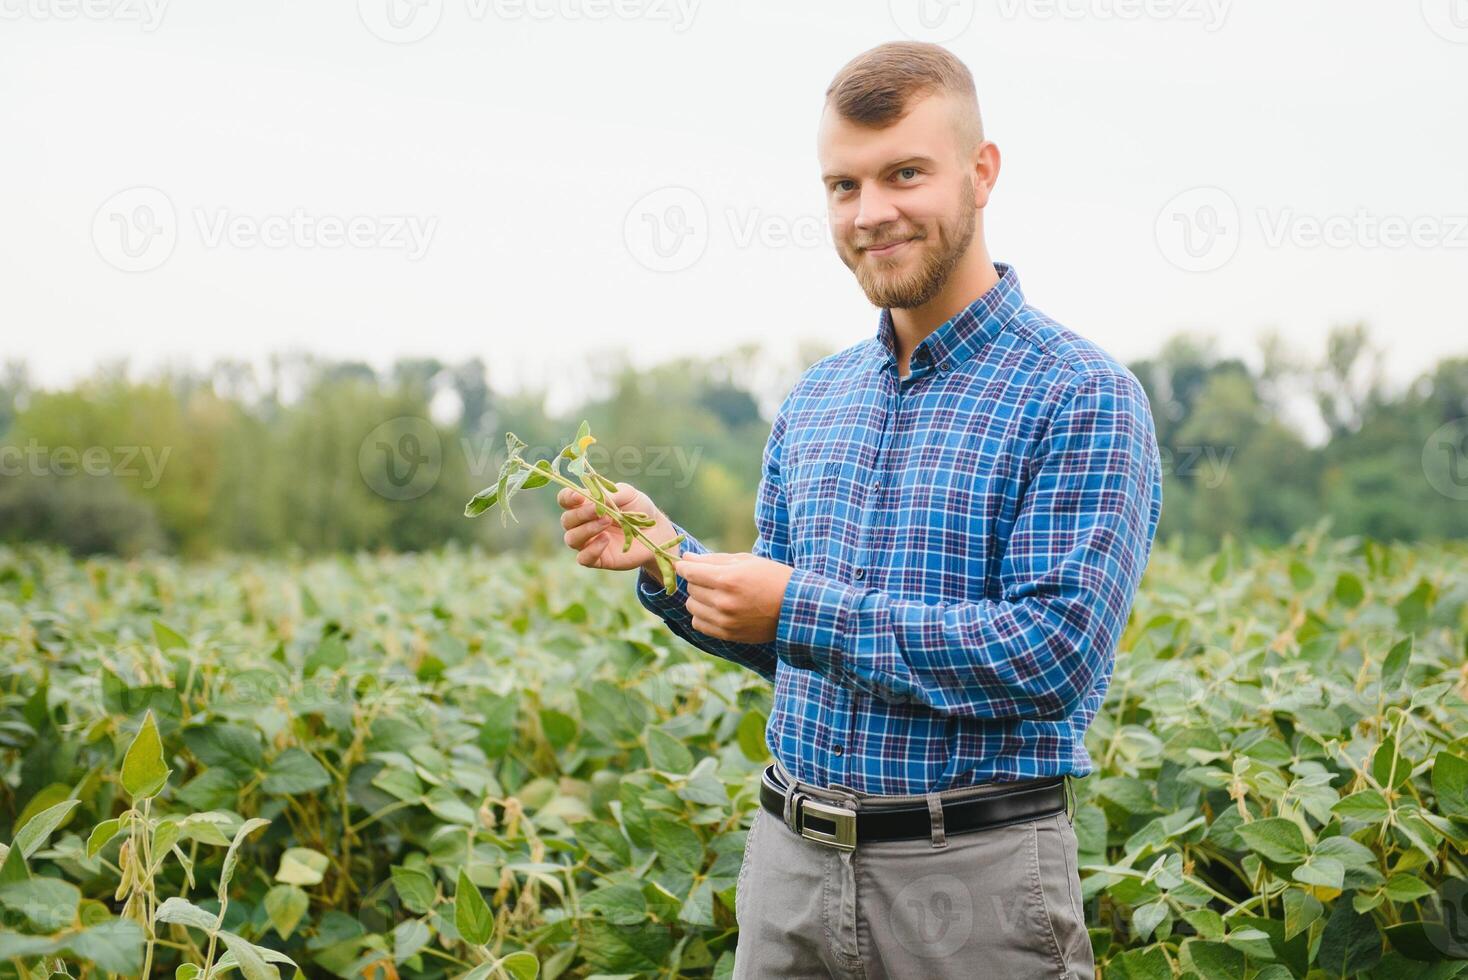 jordbrukare eller agronom granskning grön sojaböna växt i fält foto